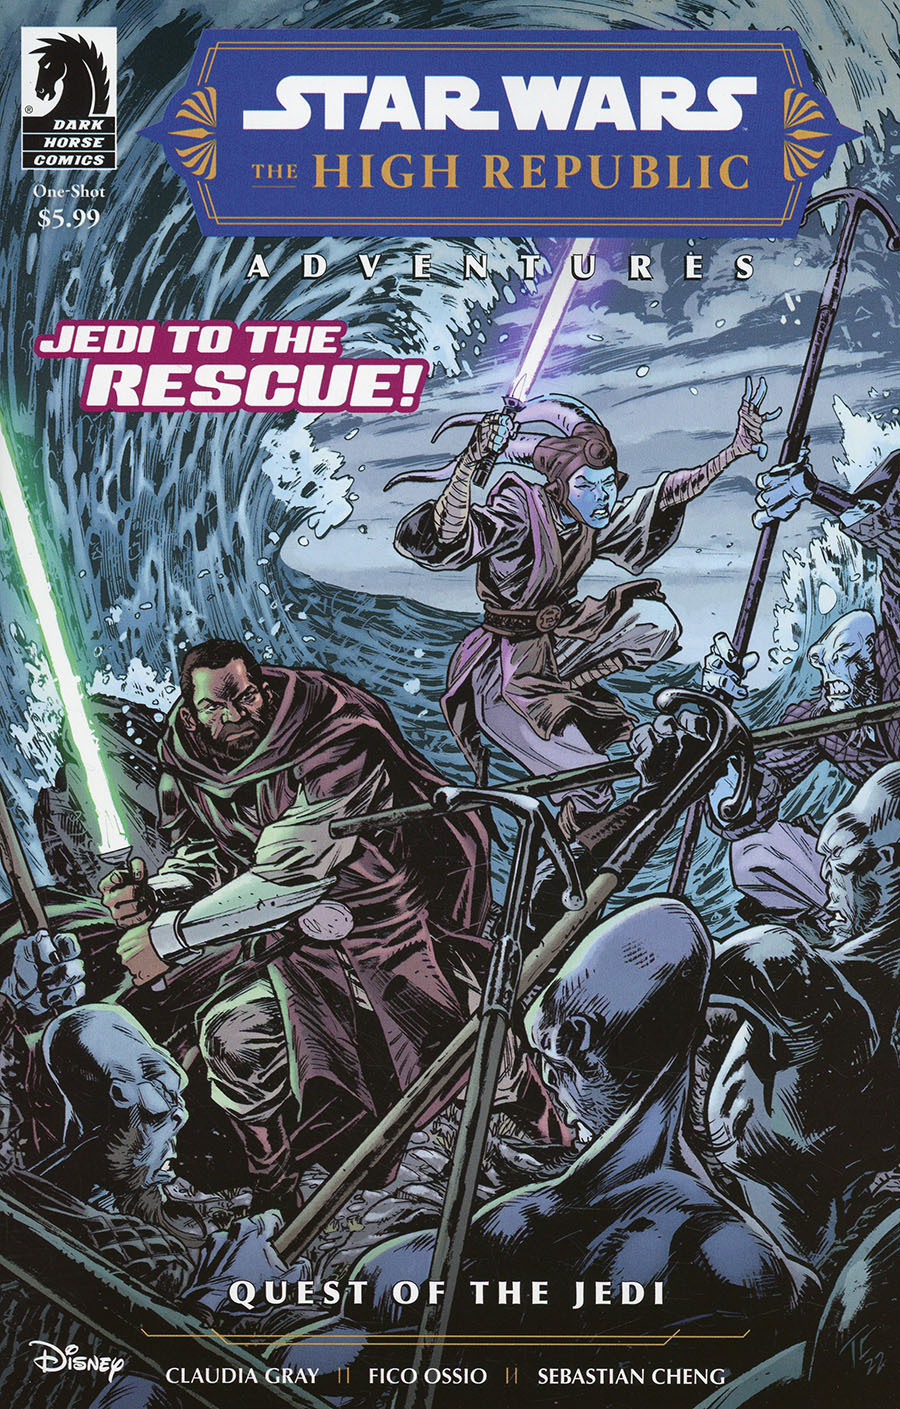 Star Wars High Republic Adventures Quest Of The Jedi #1 (One Shot) (Cover  A) – купить по выгодной цене | Интернет-магазин комиксов 28oi.ru